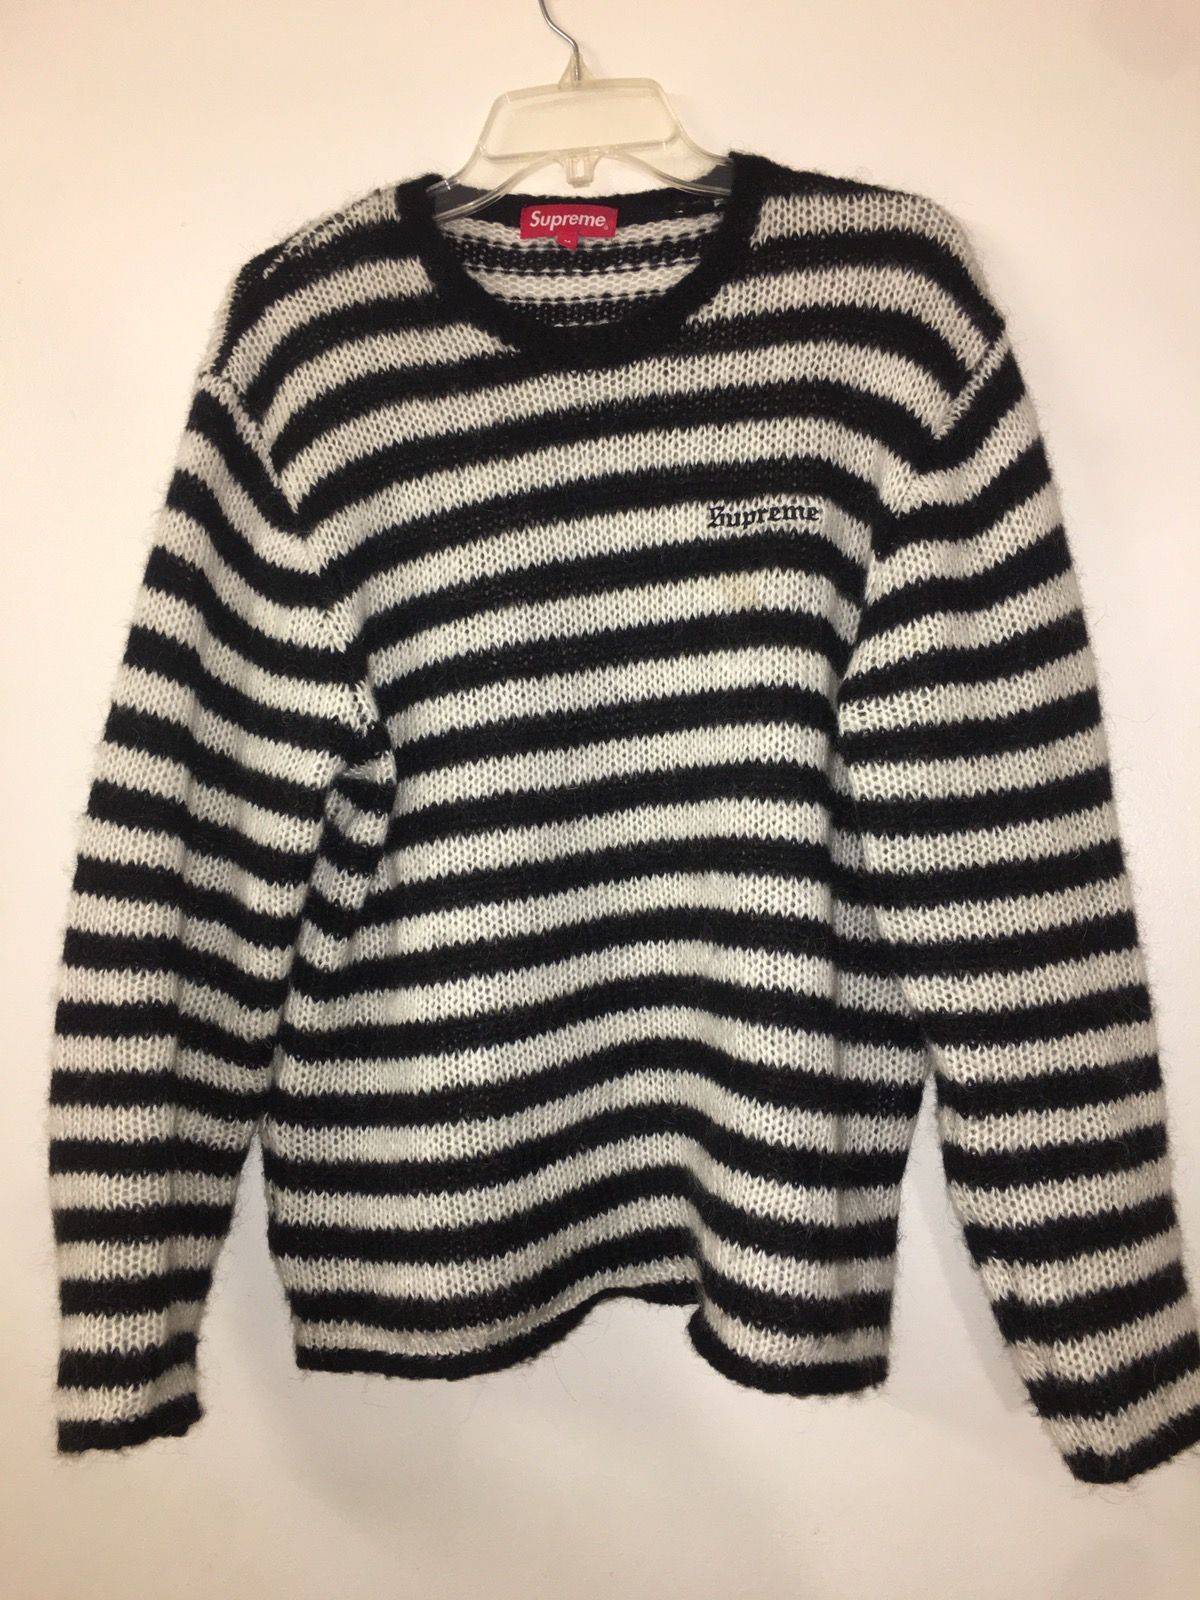 Supreme Supreme Striped Mohair Sweater | Grailed